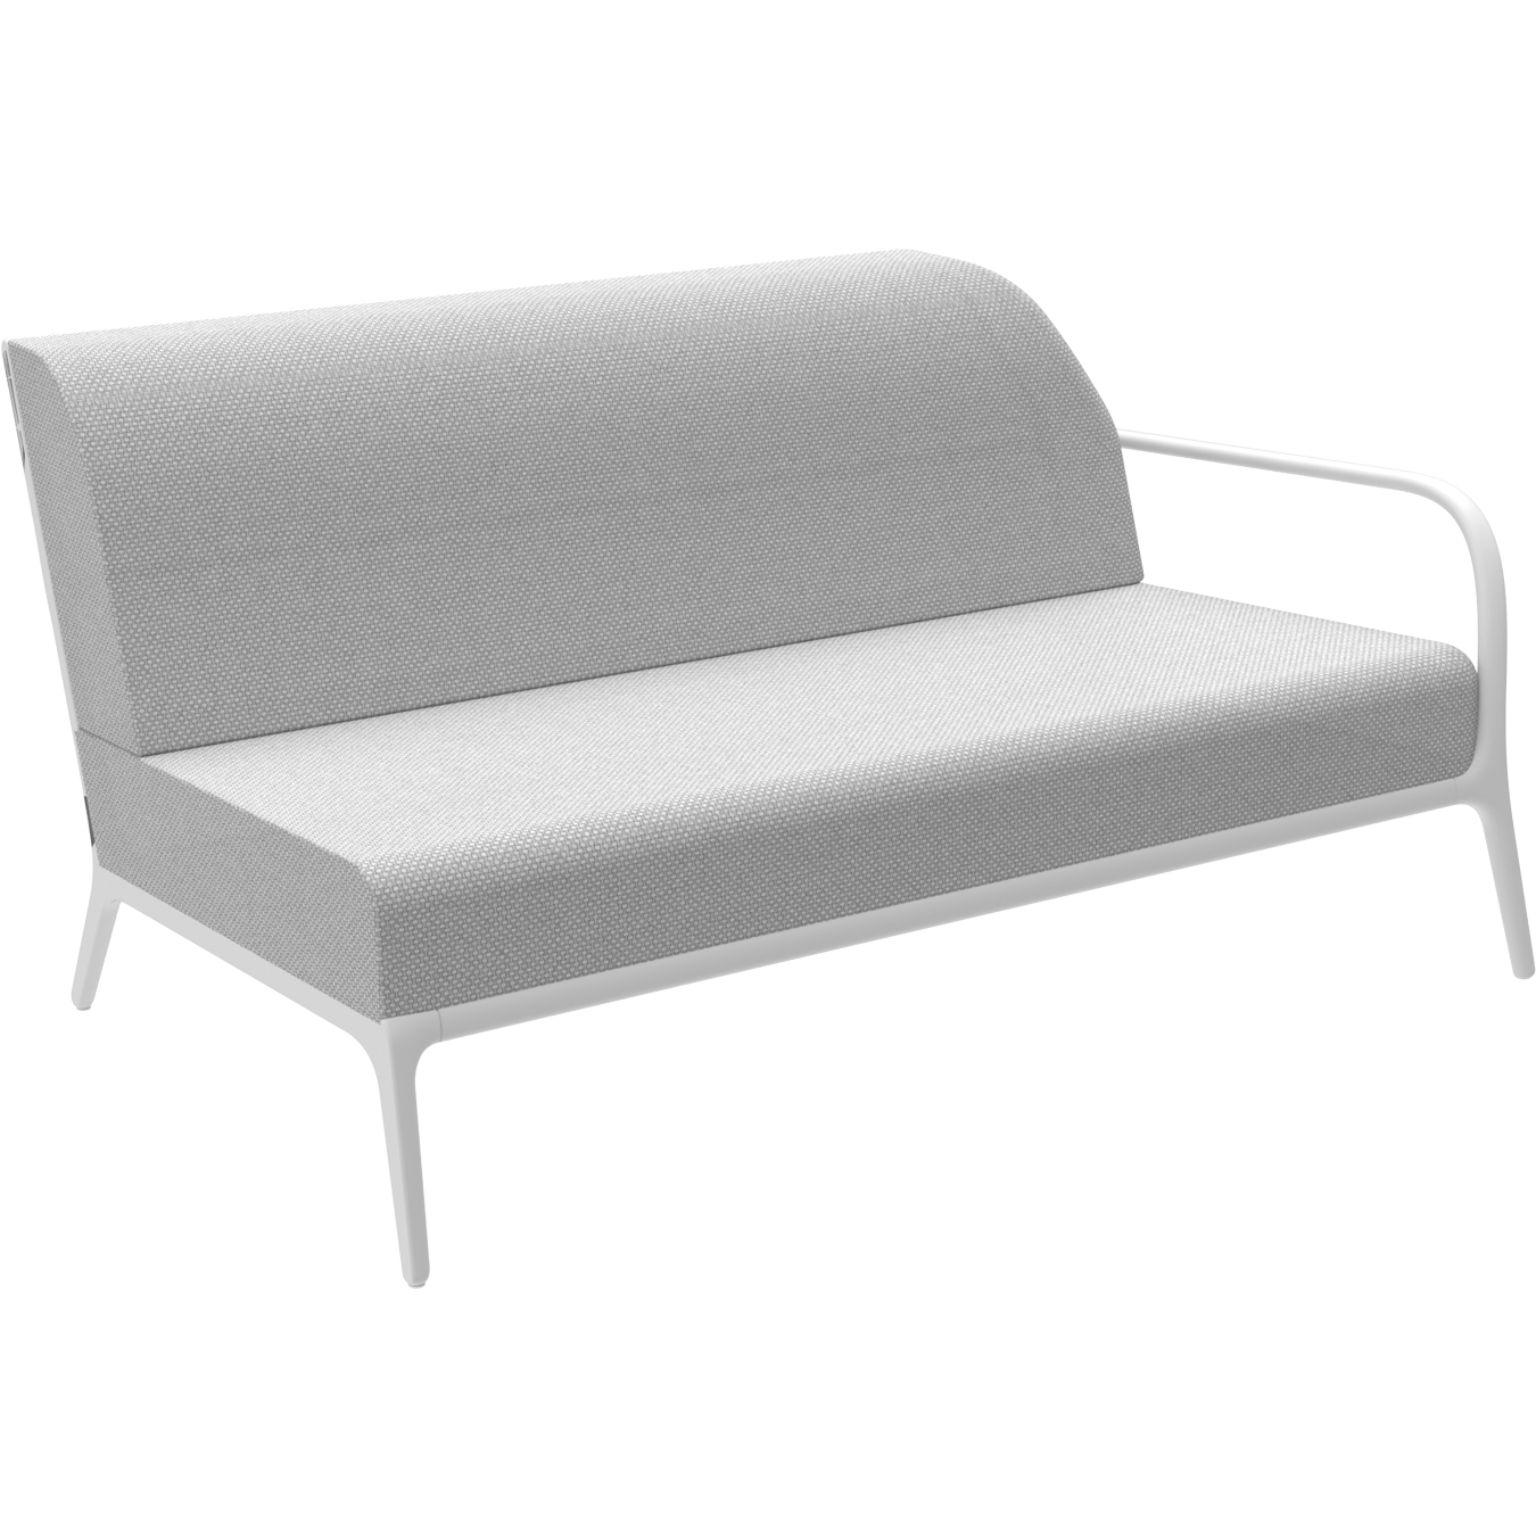 Xaloc Left 160 weißes modulares sofa von MOWEE
Abmessungen: T100 x B160 x H81 cm (Sitzhöhe 42cm)
MATERIAL: Aluminium, Textil
Gewicht: 37 kg
Auch in verschiedenen Farben und Ausführungen erhältlich. 

 Xaloc synthetisiert die Linien der